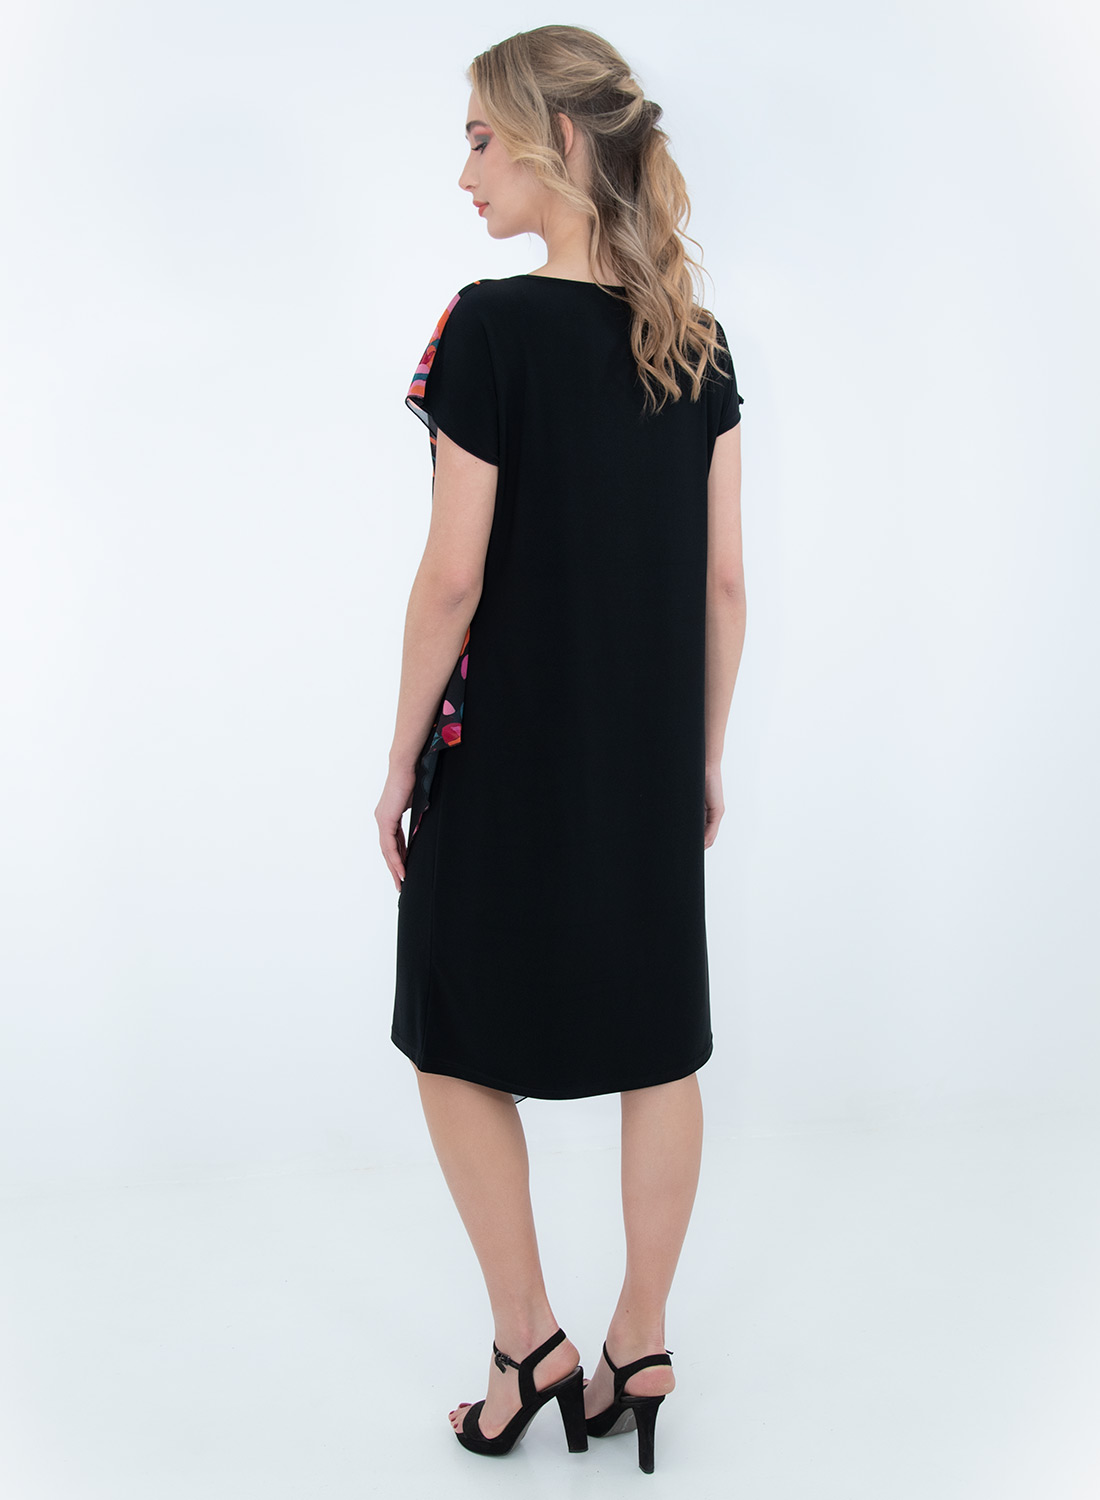 Μαύρο φόρεμα με φλοράλ σχέδιο